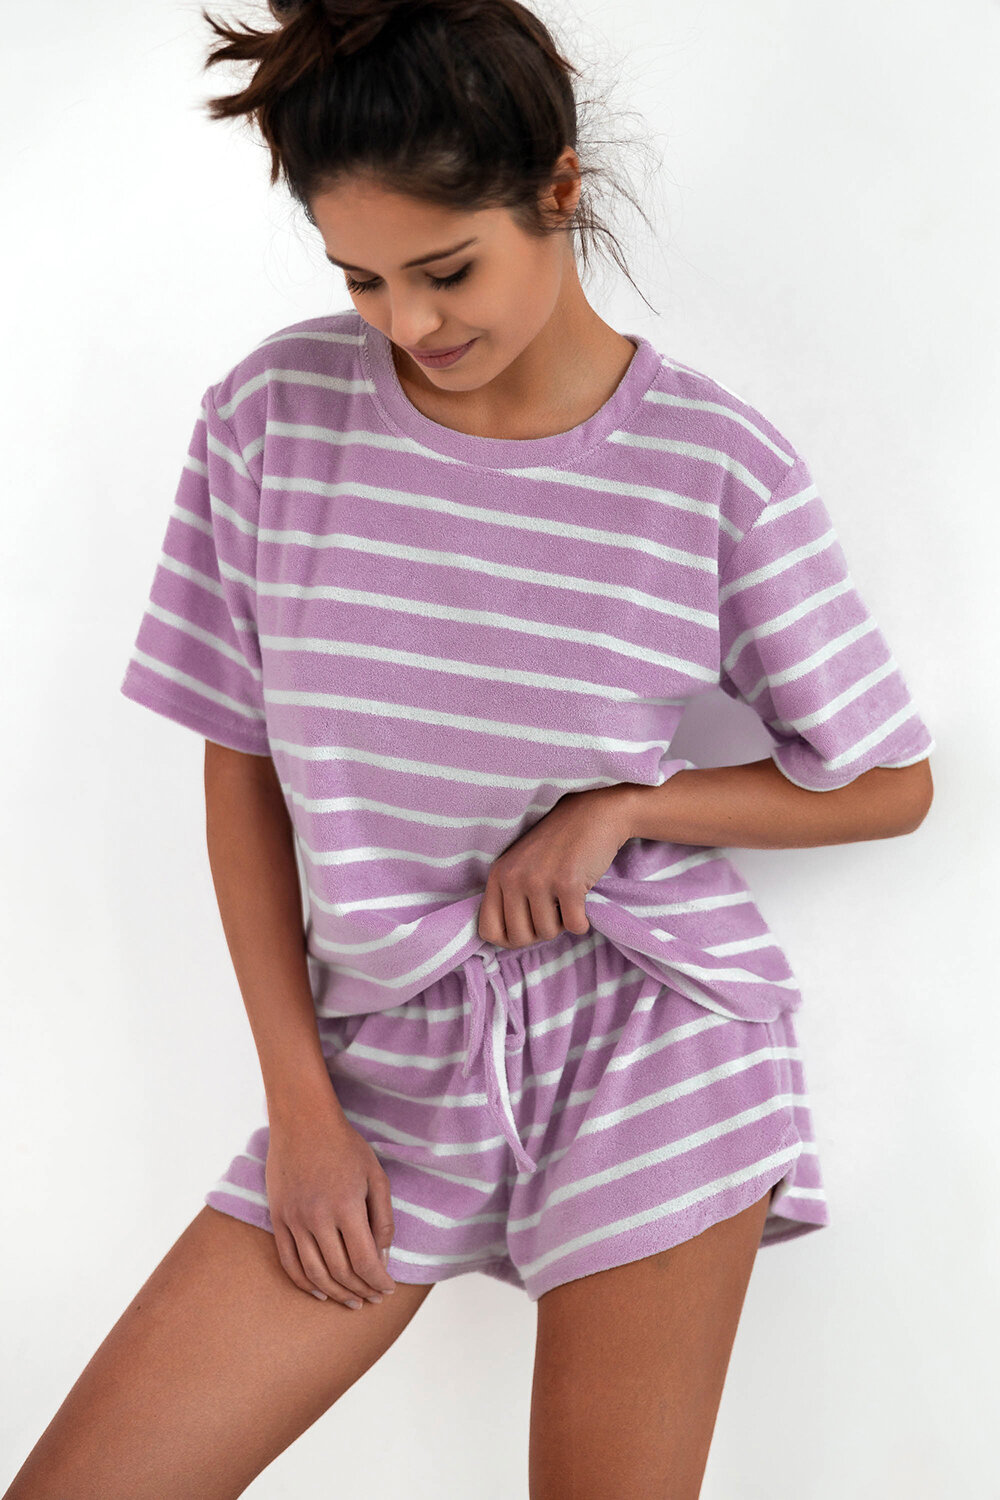 Пижама женская SENSIS Unity, футболка и шорты, сиреневый (Размер: S/M)